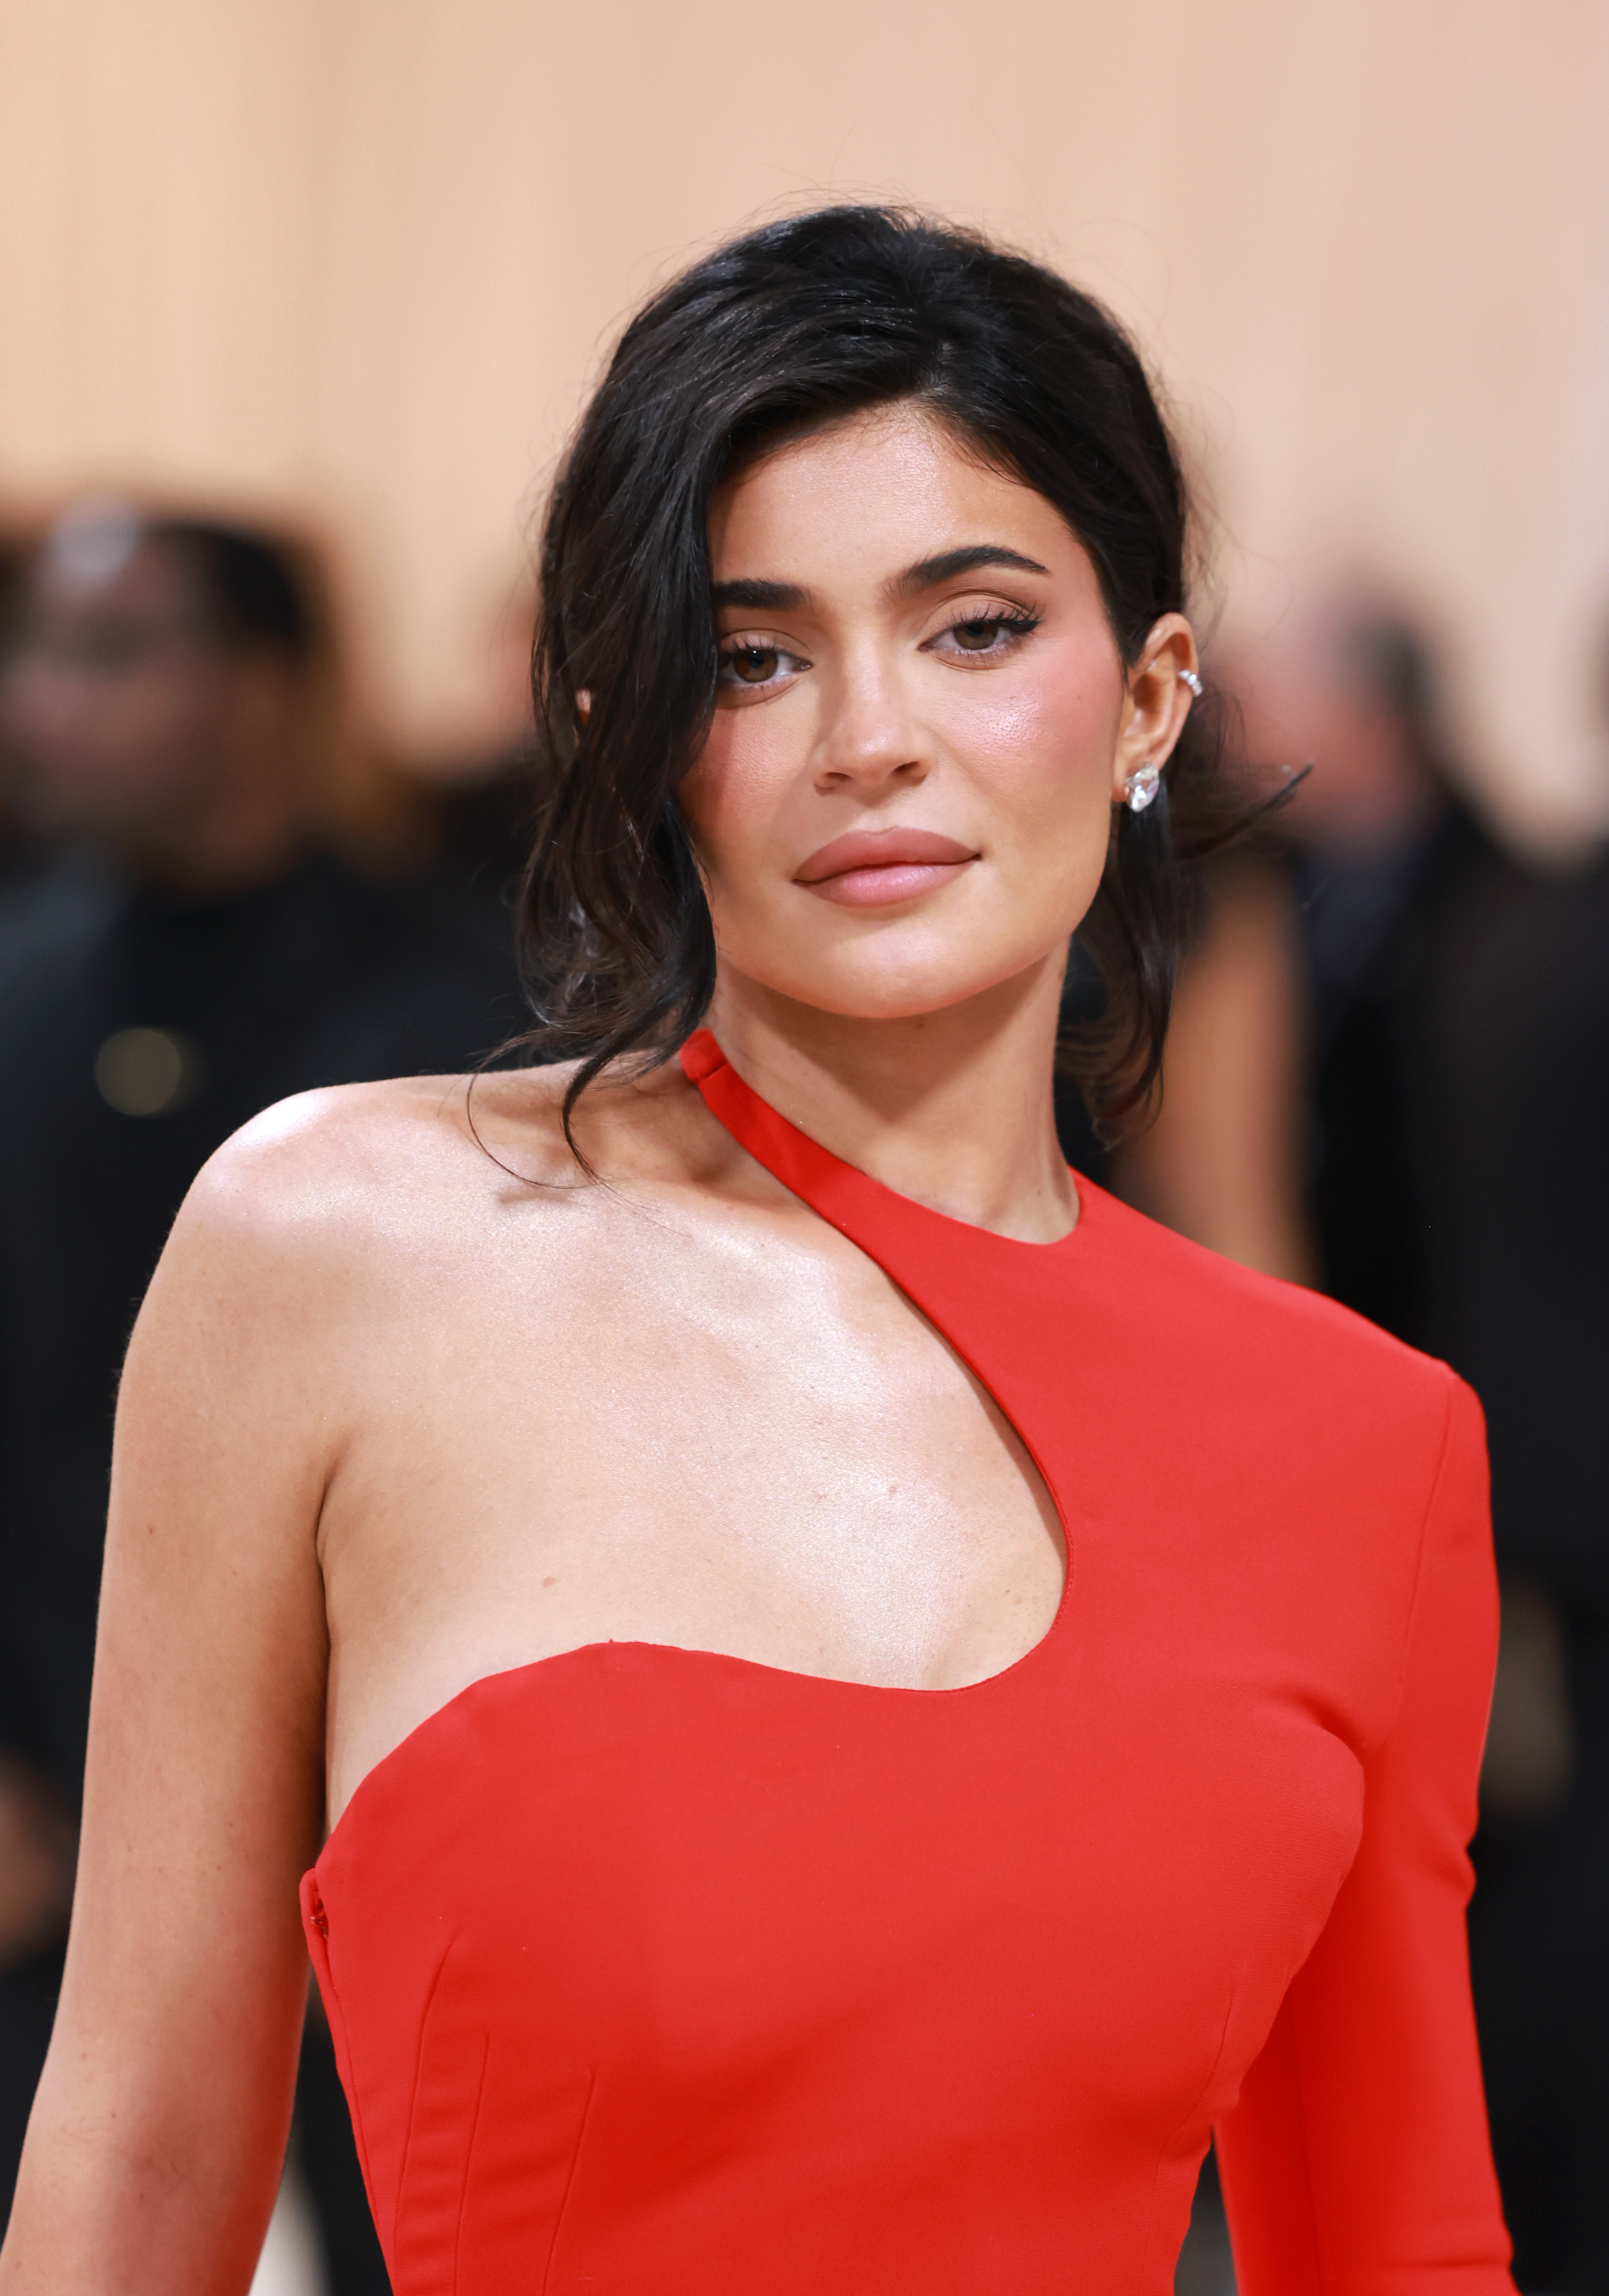 Kylie Jenner versuchte, ihren Vornamen markenrechtlich schützen zu lassen